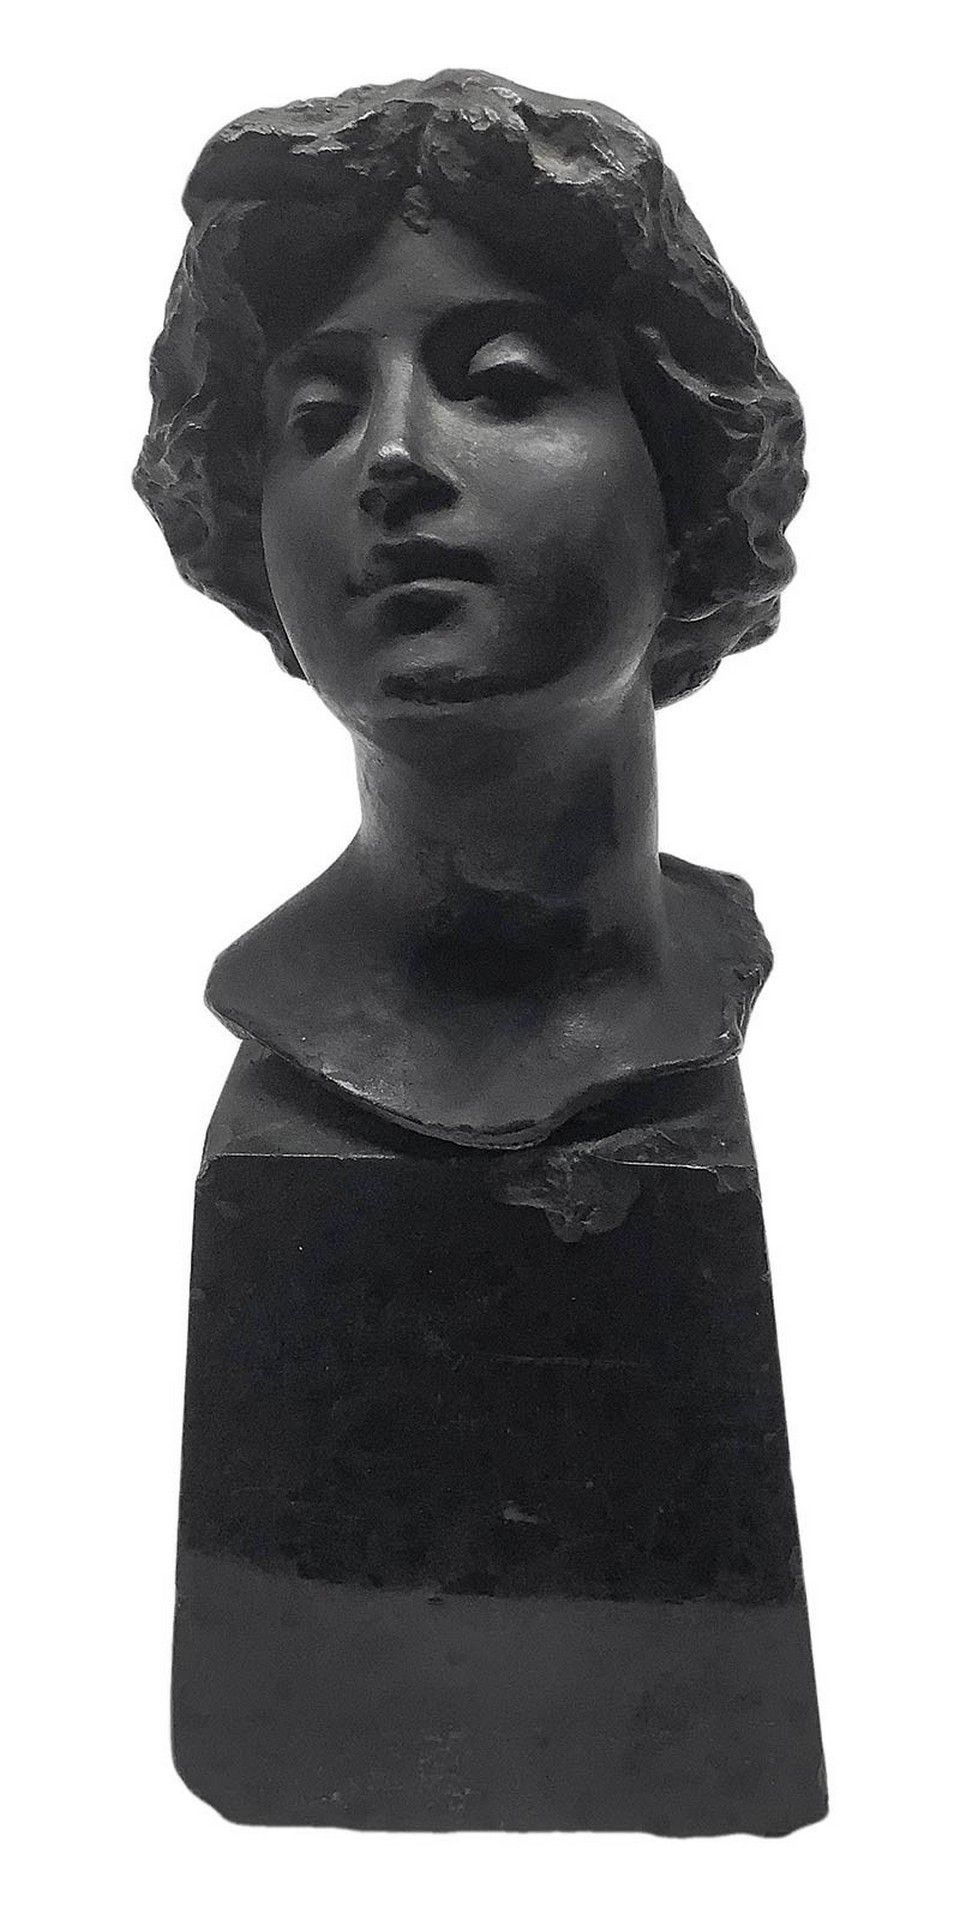 Null 年轻女性头部的失蜡铜像，高9.5厘米，底座高17厘米，灰黑色大理石的截顶金字塔形底座。底部有小缺口